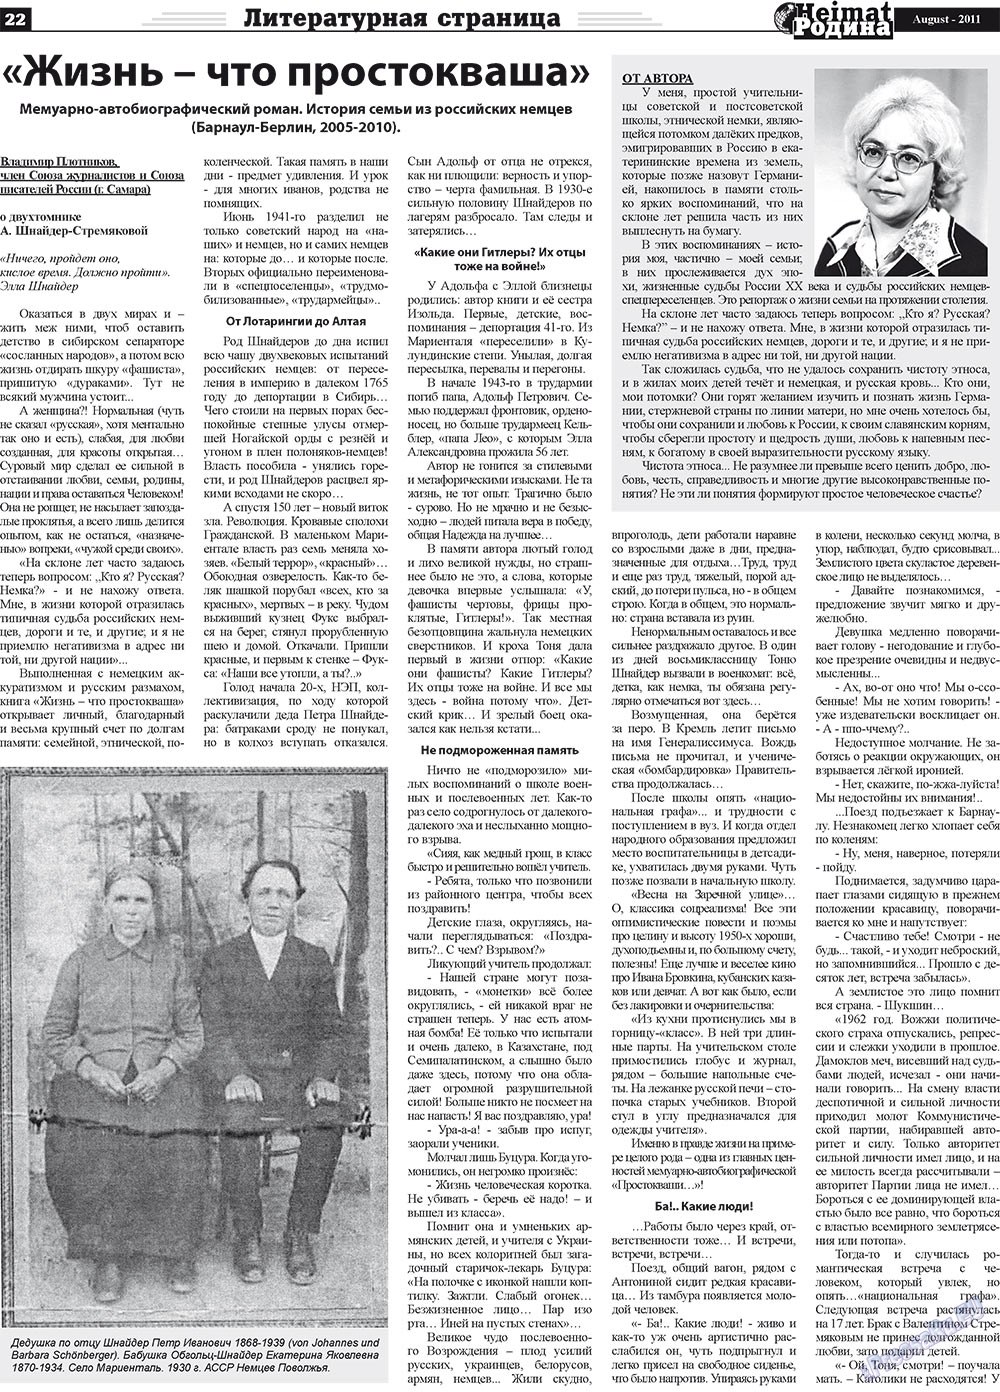 Heimat-Родина (газета). 2011 год, номер 8, стр. 22